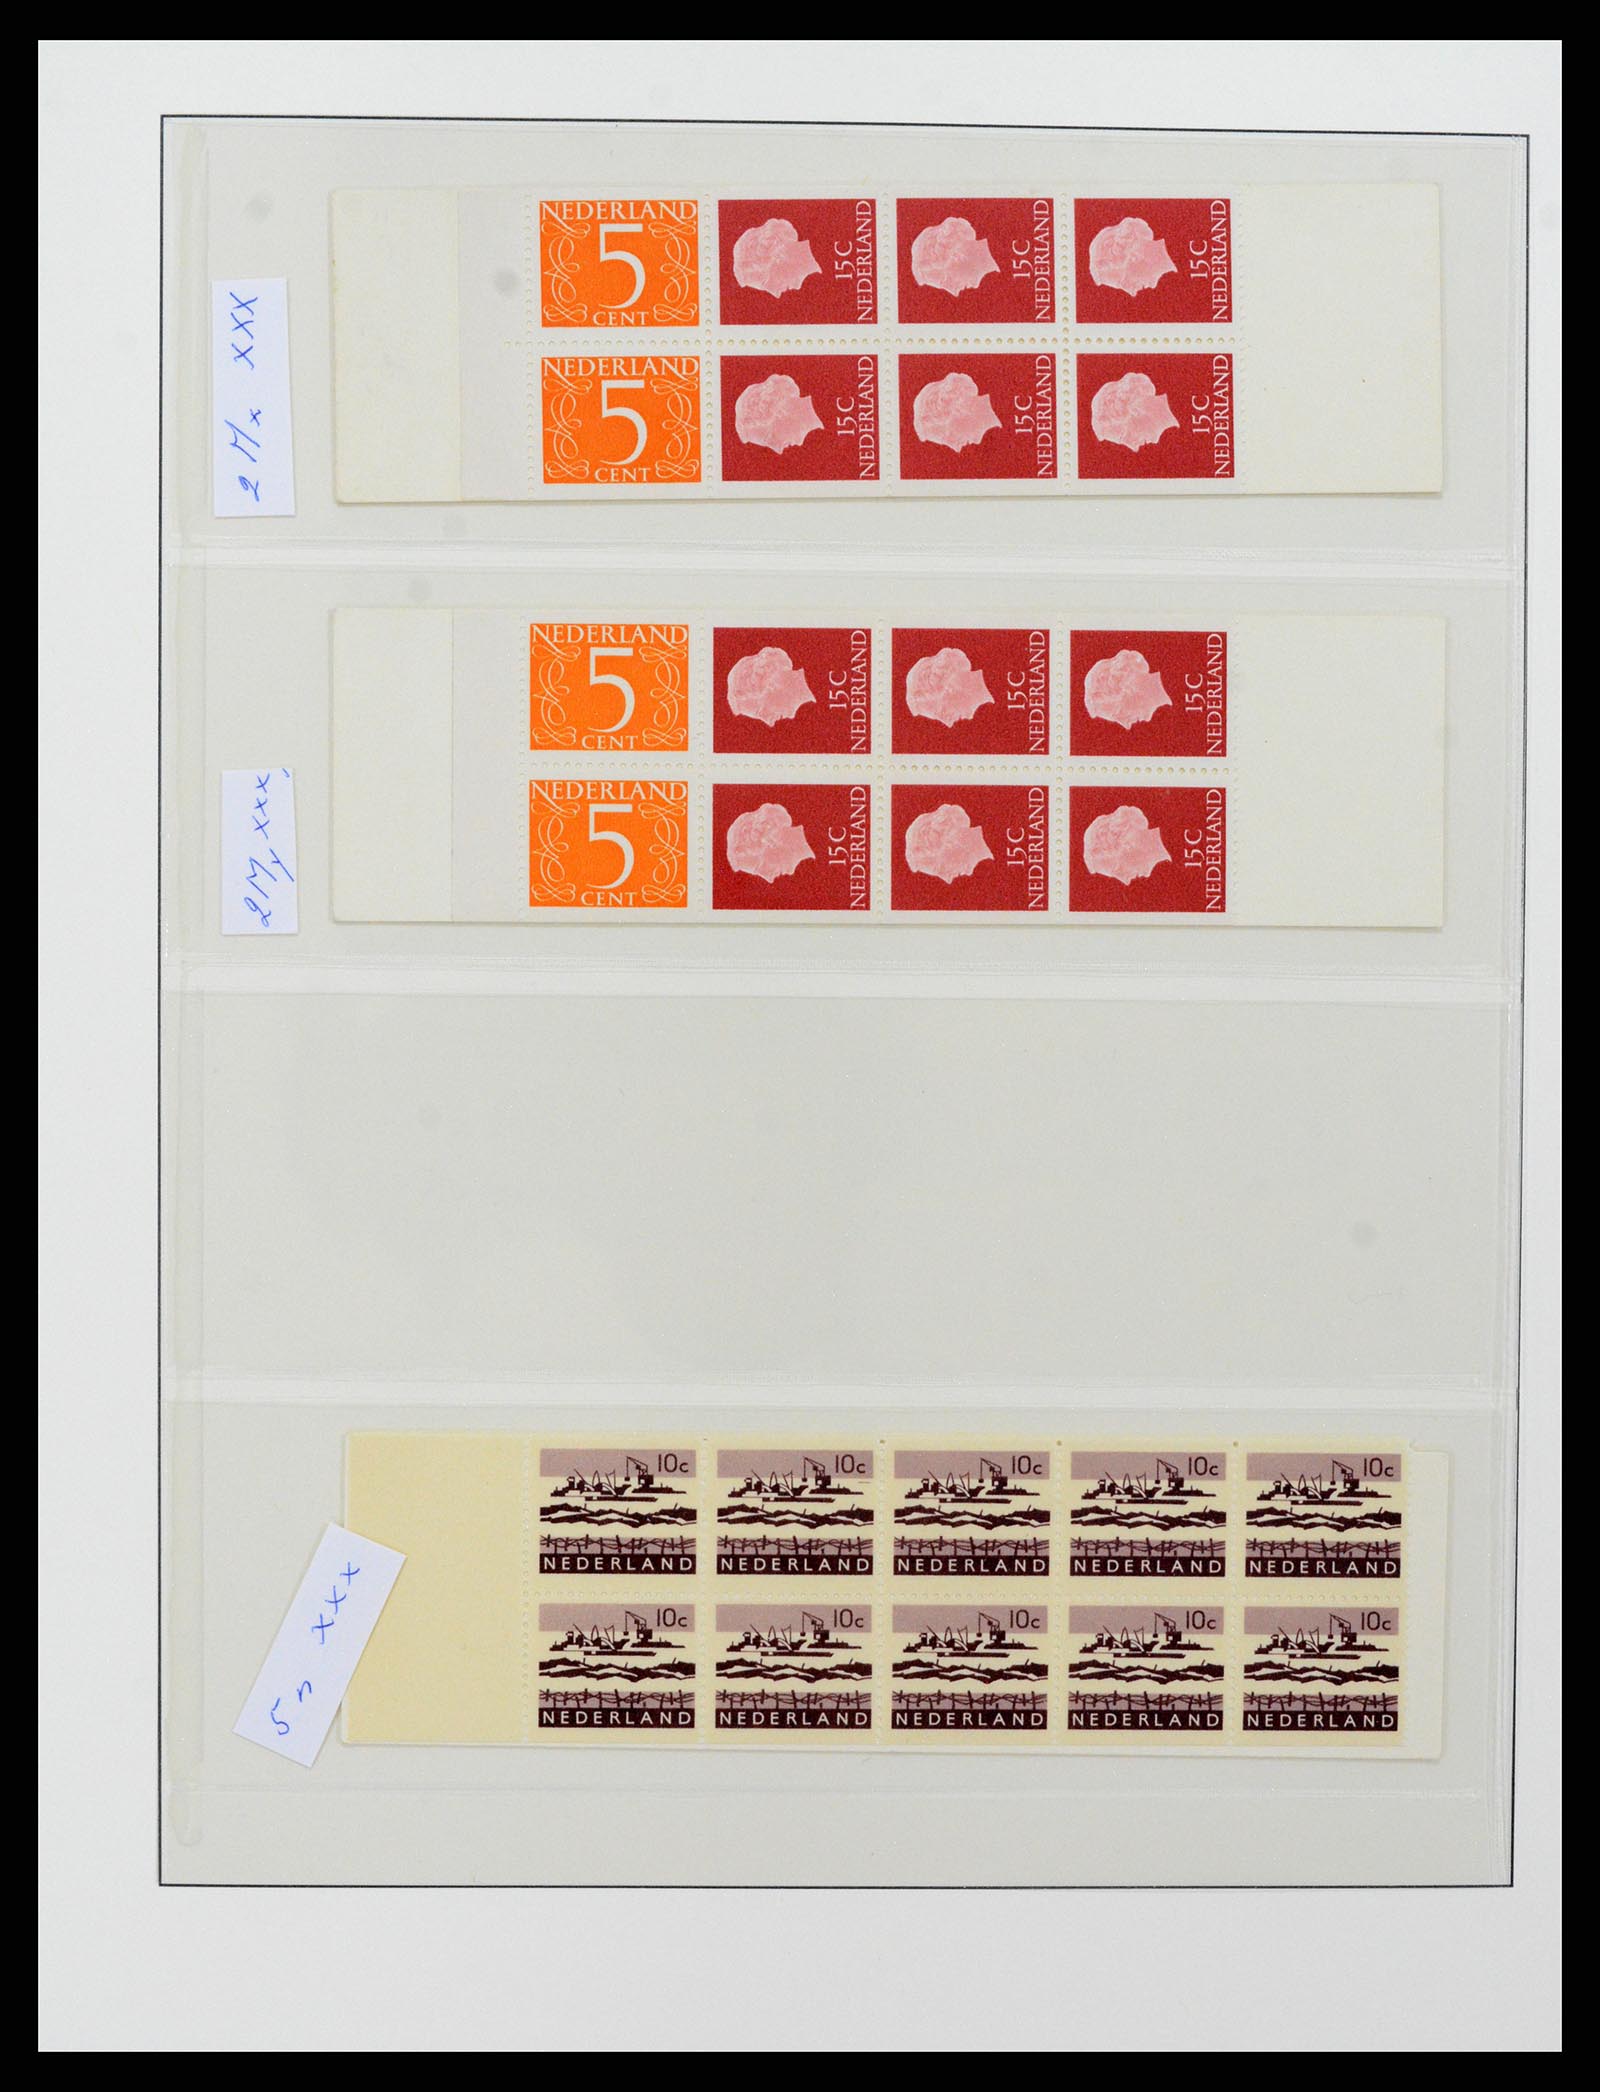 37994 003 - Stamp Collection 37994 Netherlands stampbooklets 1964-2002.